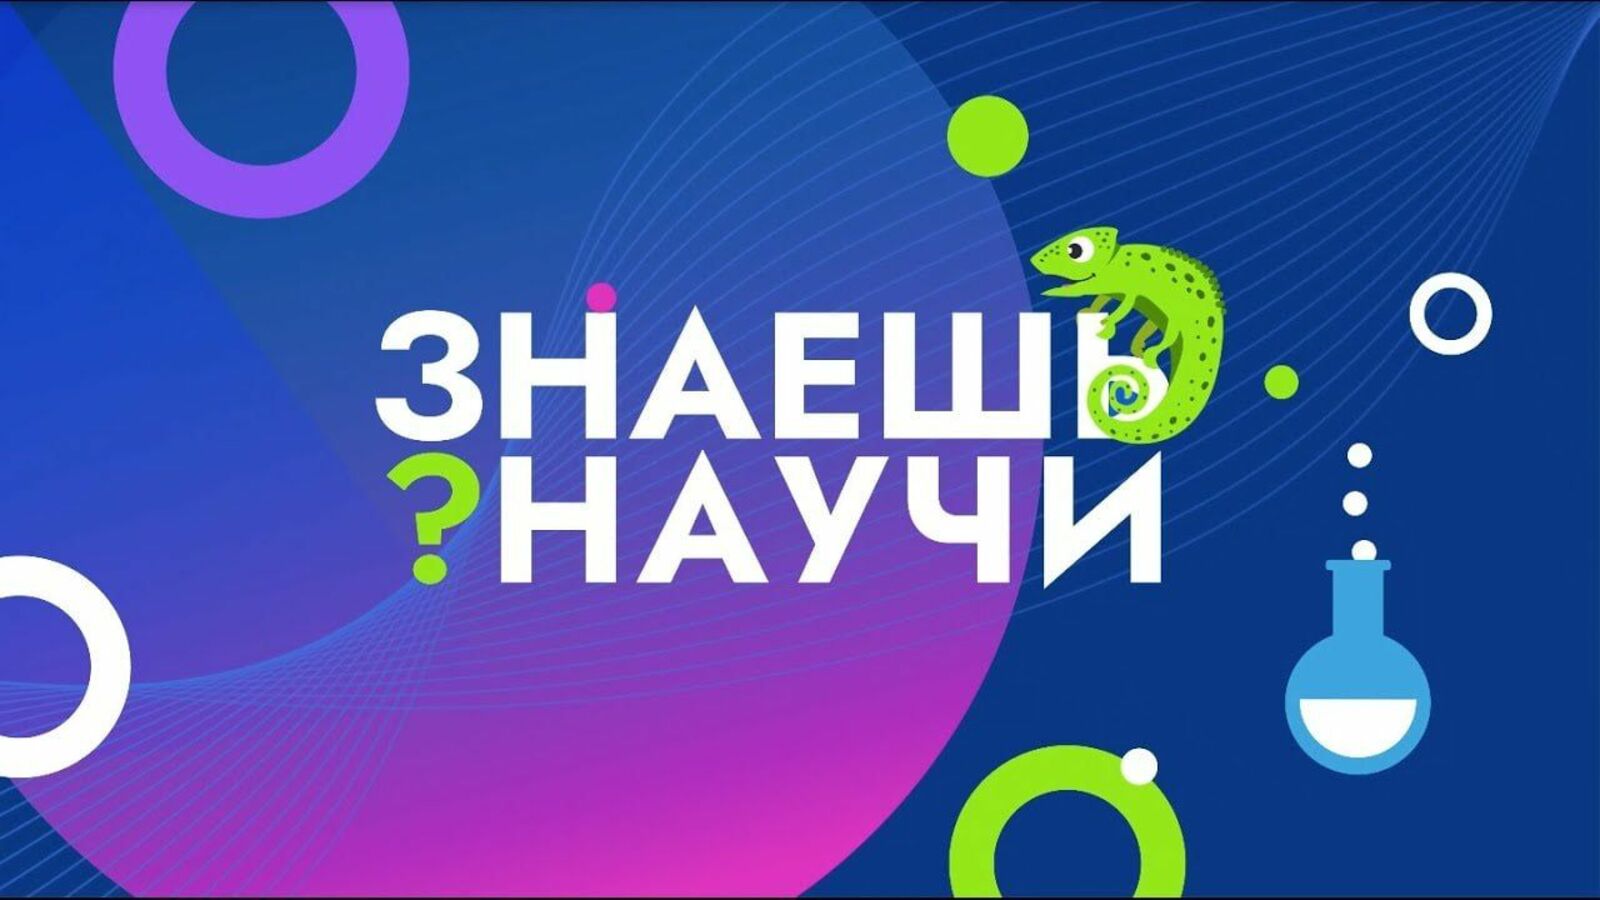 В России стартовал третий сезон научно-популярного видео «Знаешь? Научи!».